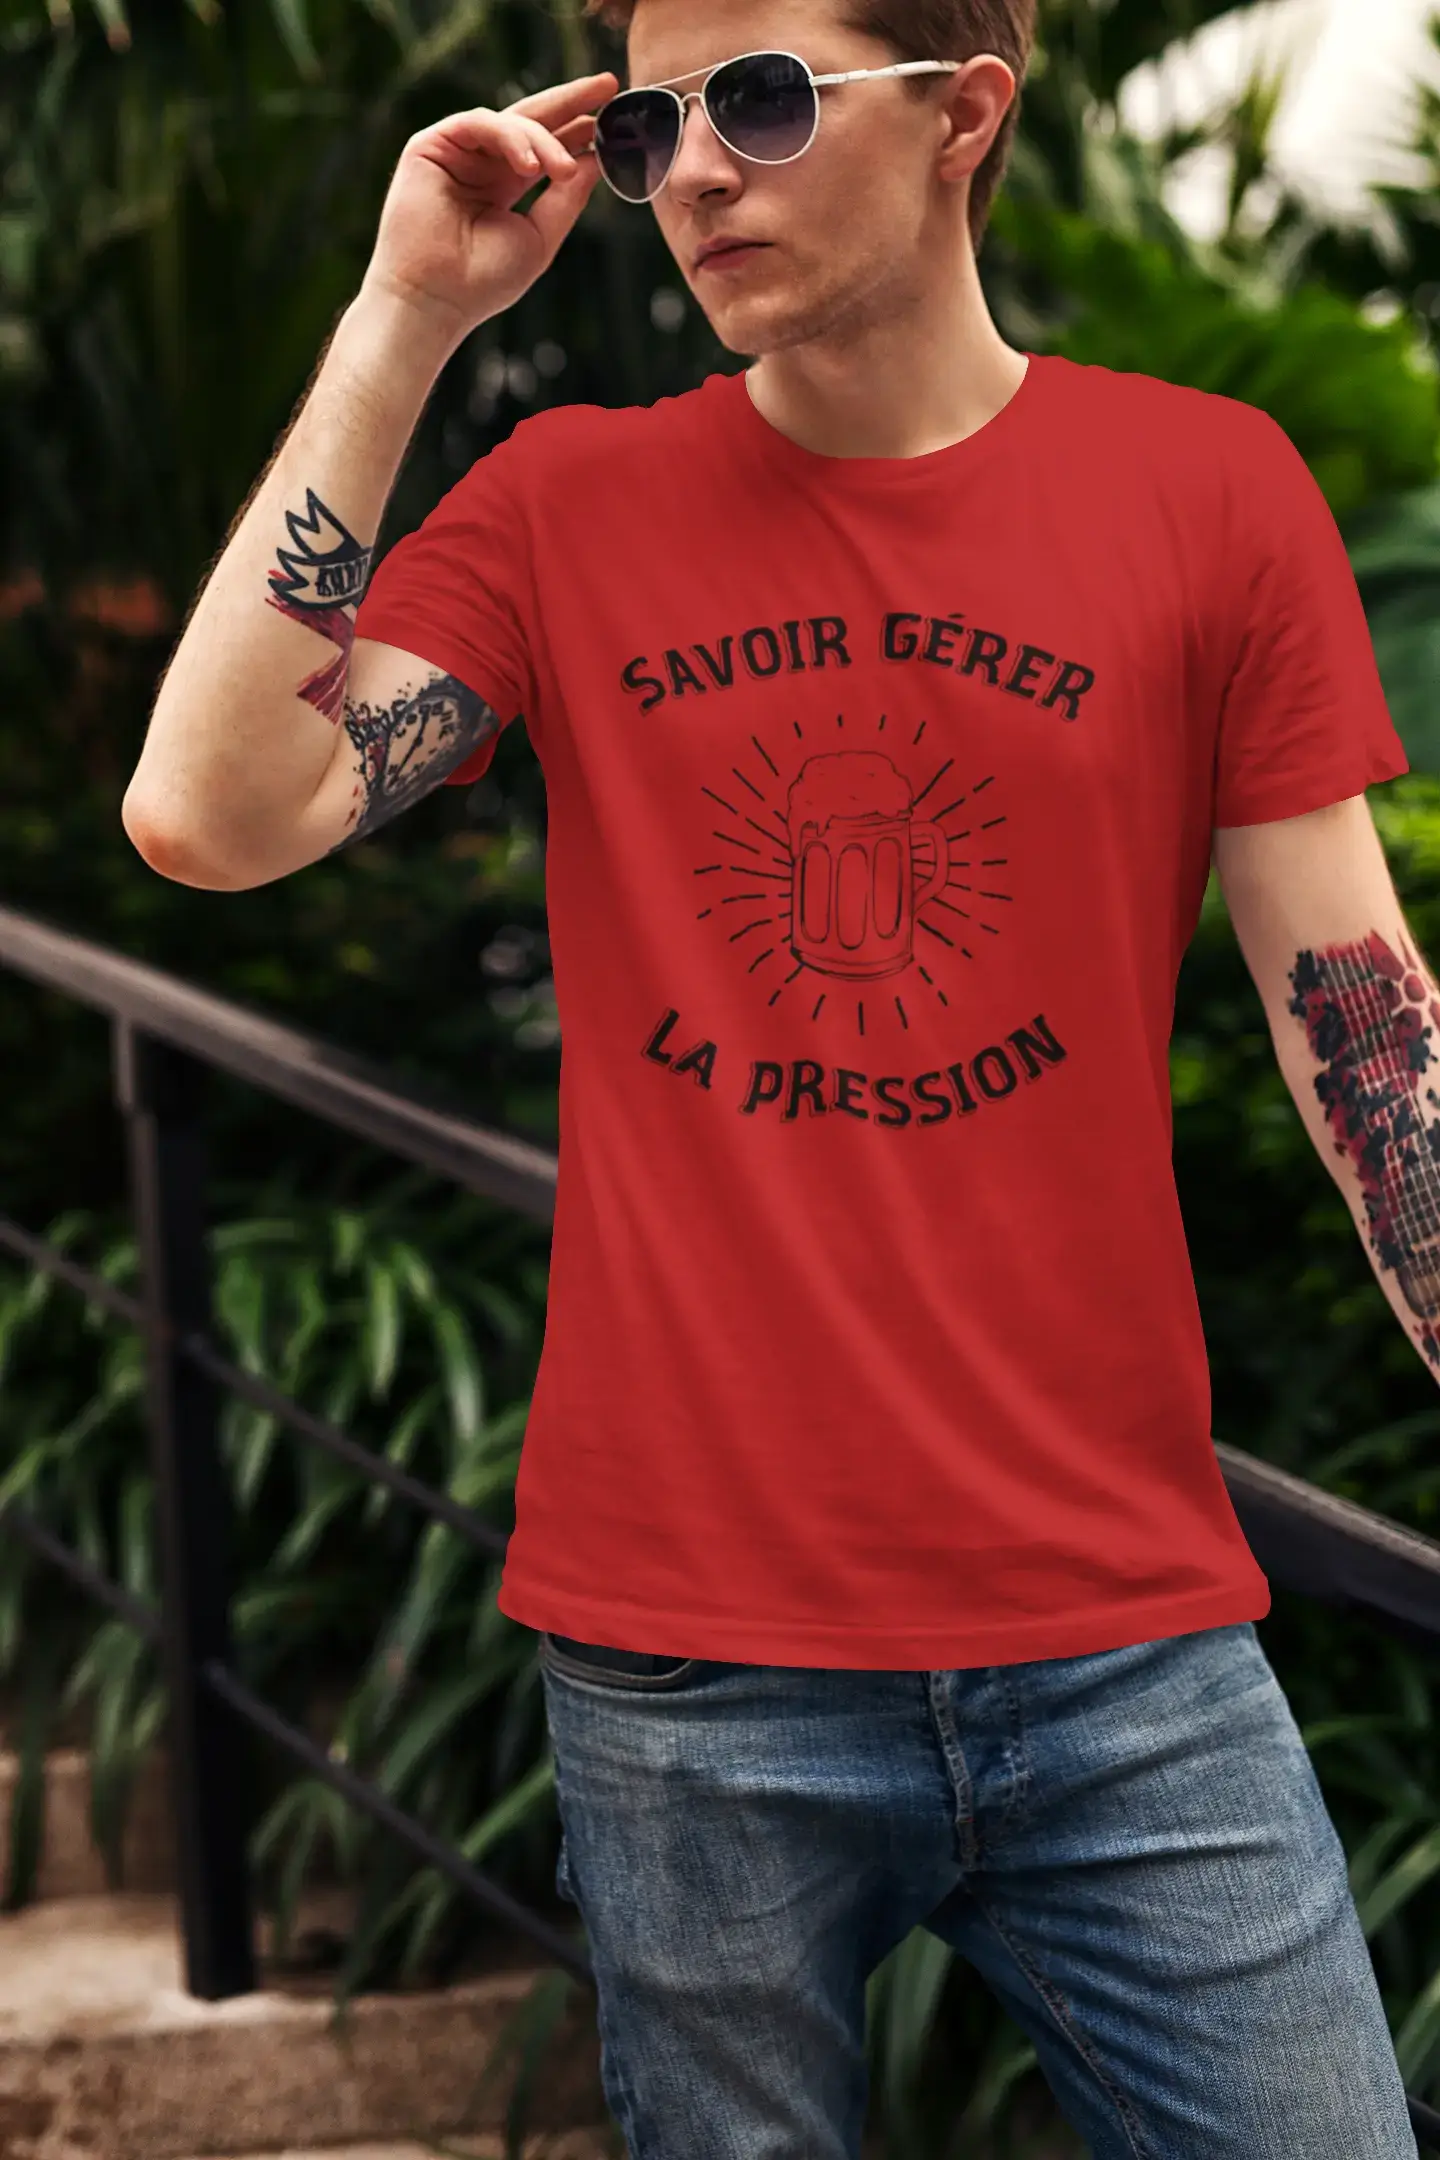 Men's Graphic T-Shirt Savoir Gérer la Pression Idea Gift